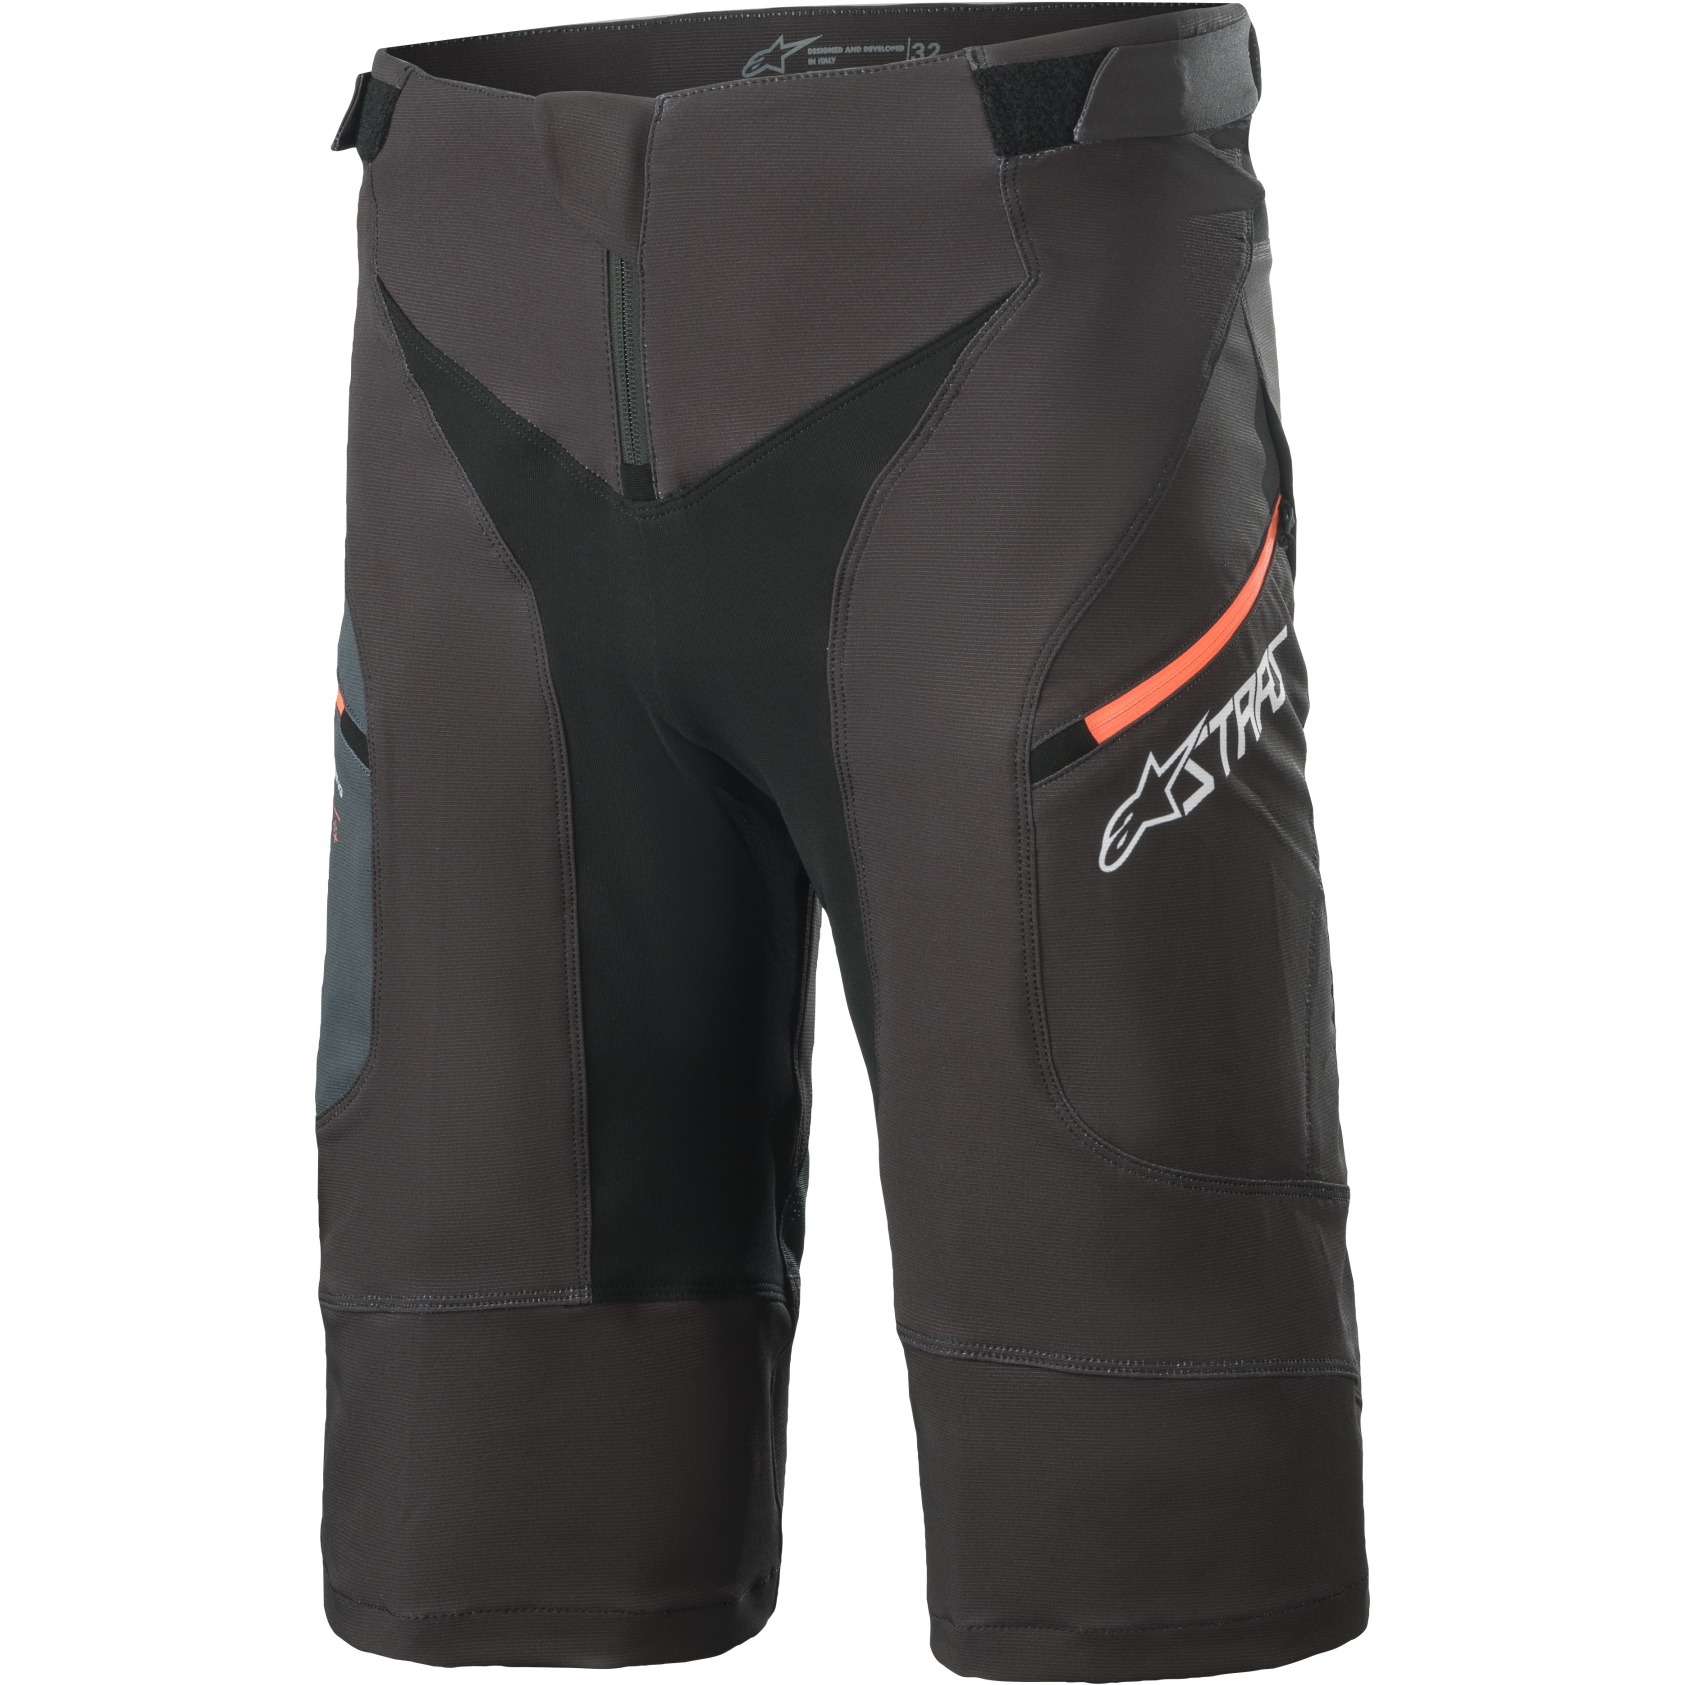 Productfoto van Alpinestars Drop 8.0 Shorts - black/coral